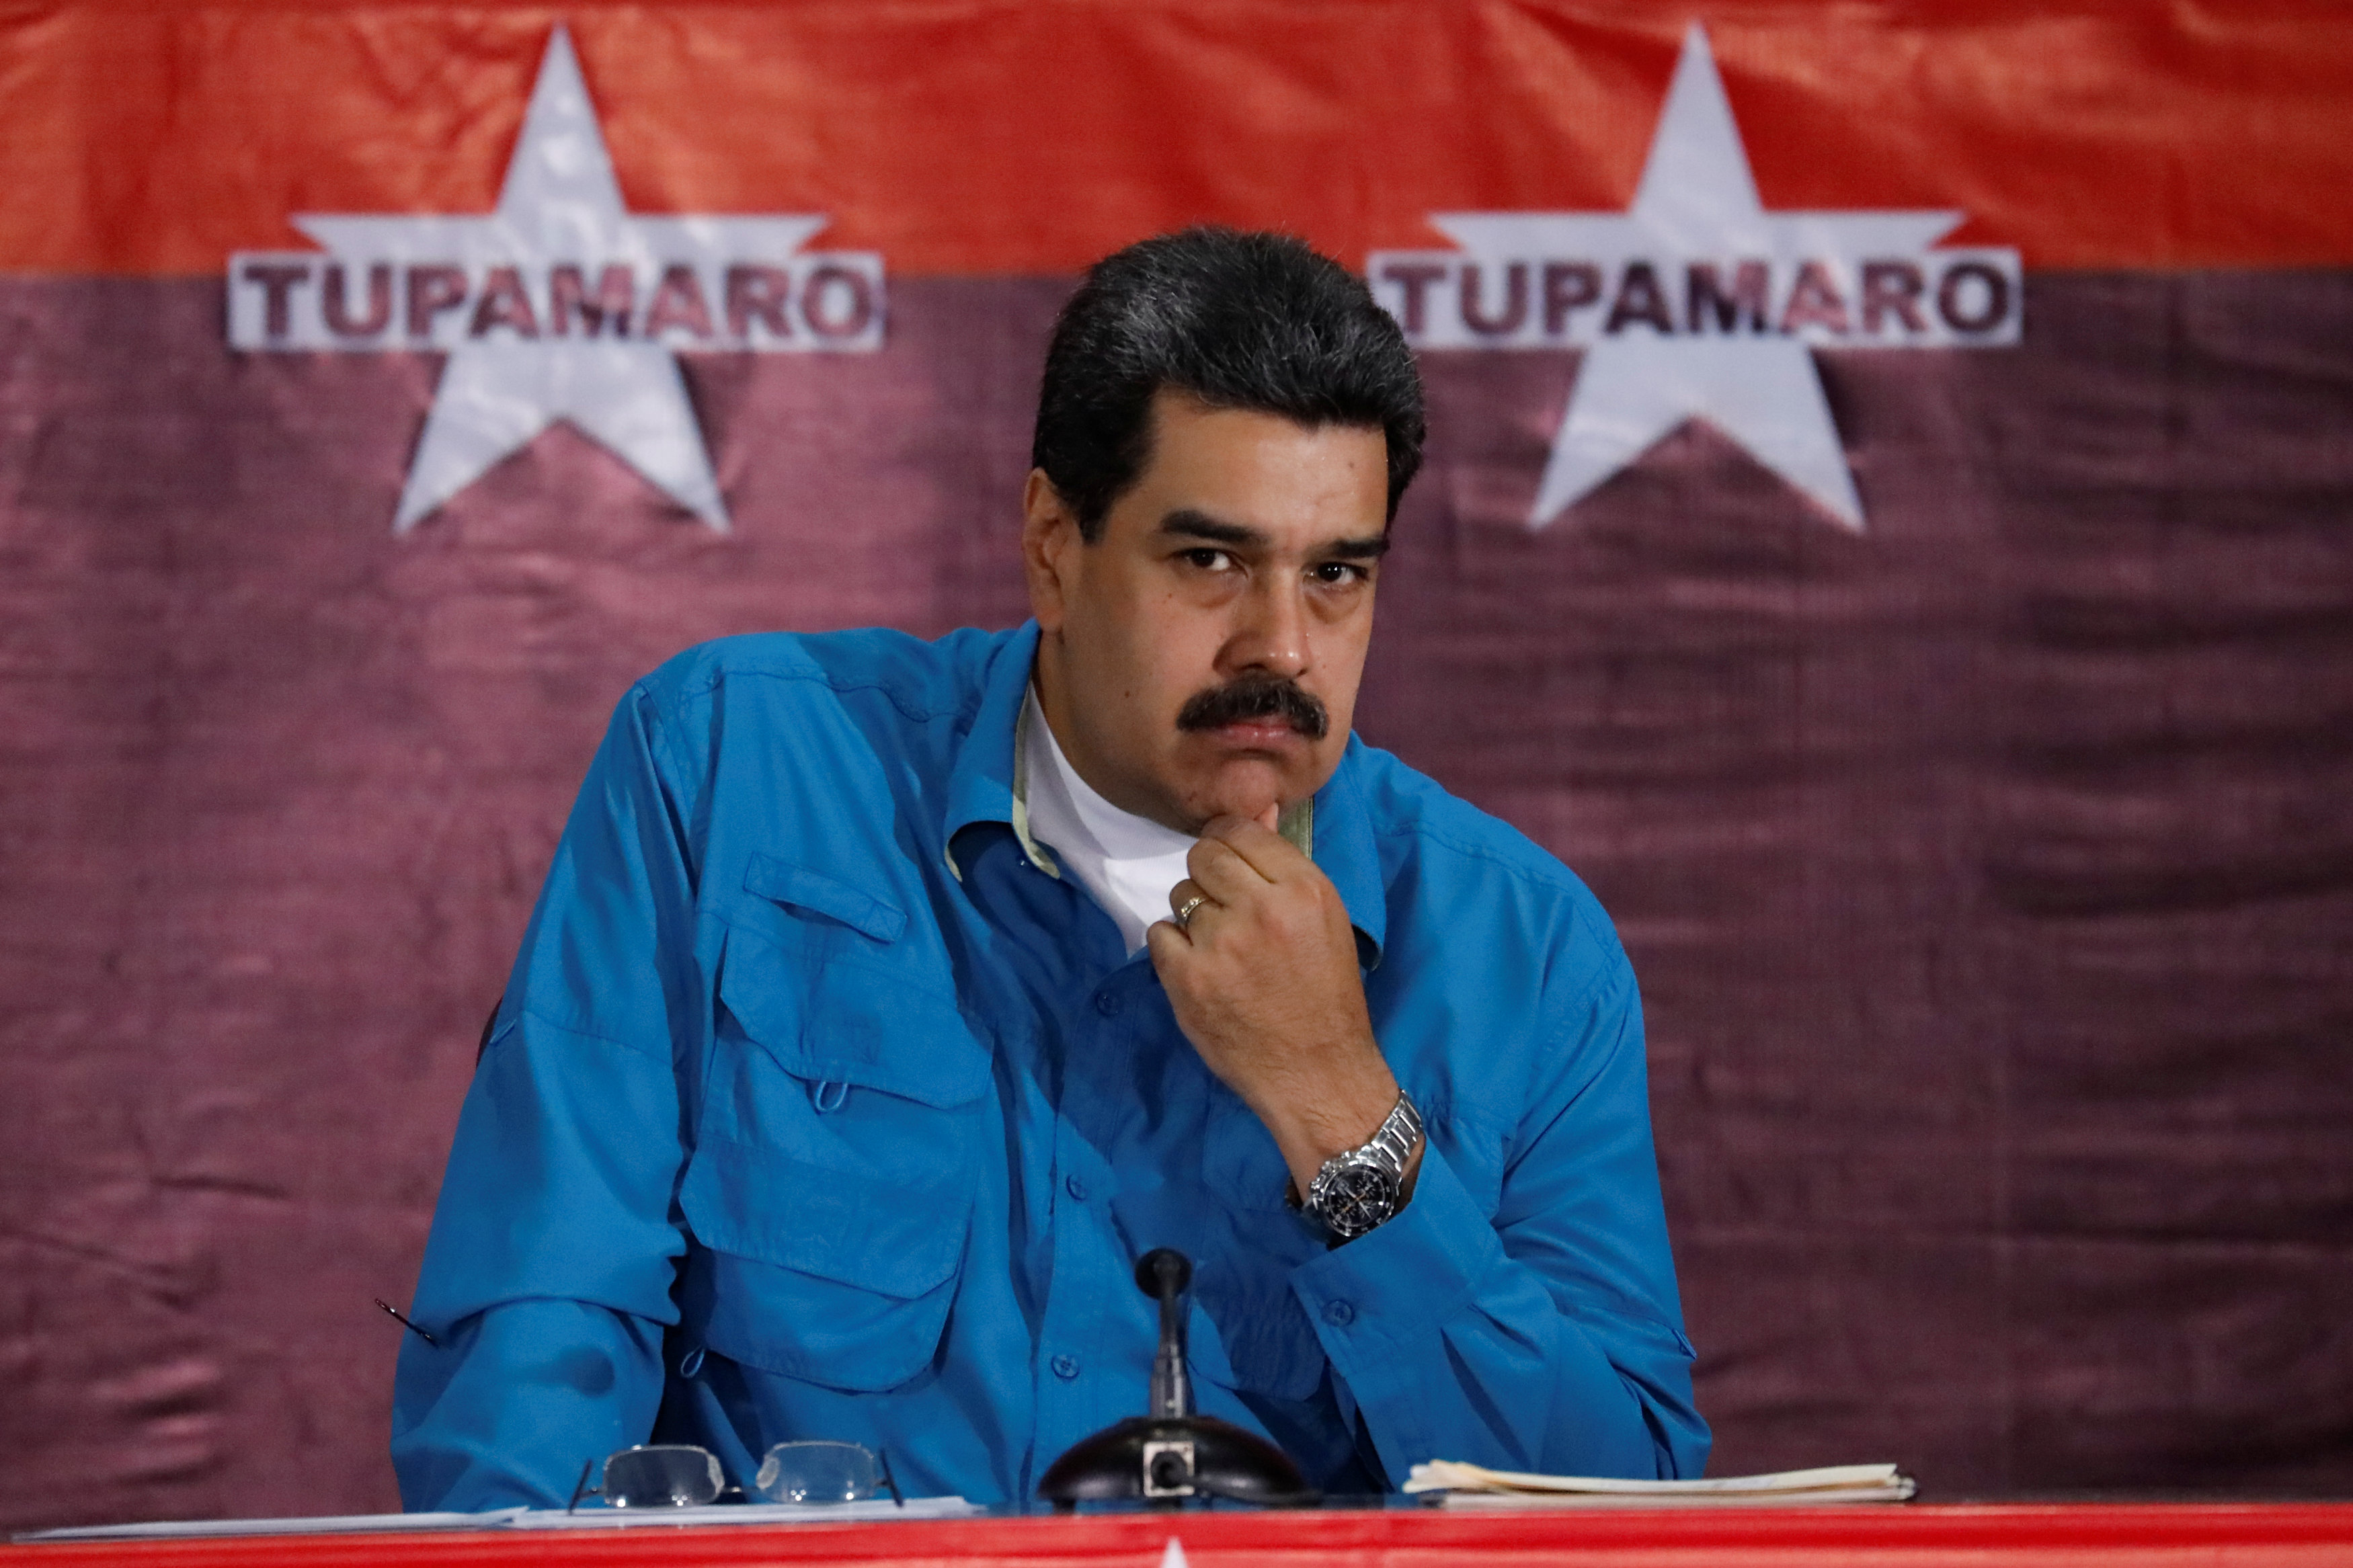 El cinismo: Nicolás Maduro asegura que habrá “todas las garantías necesarias” en elecciones presidenciales